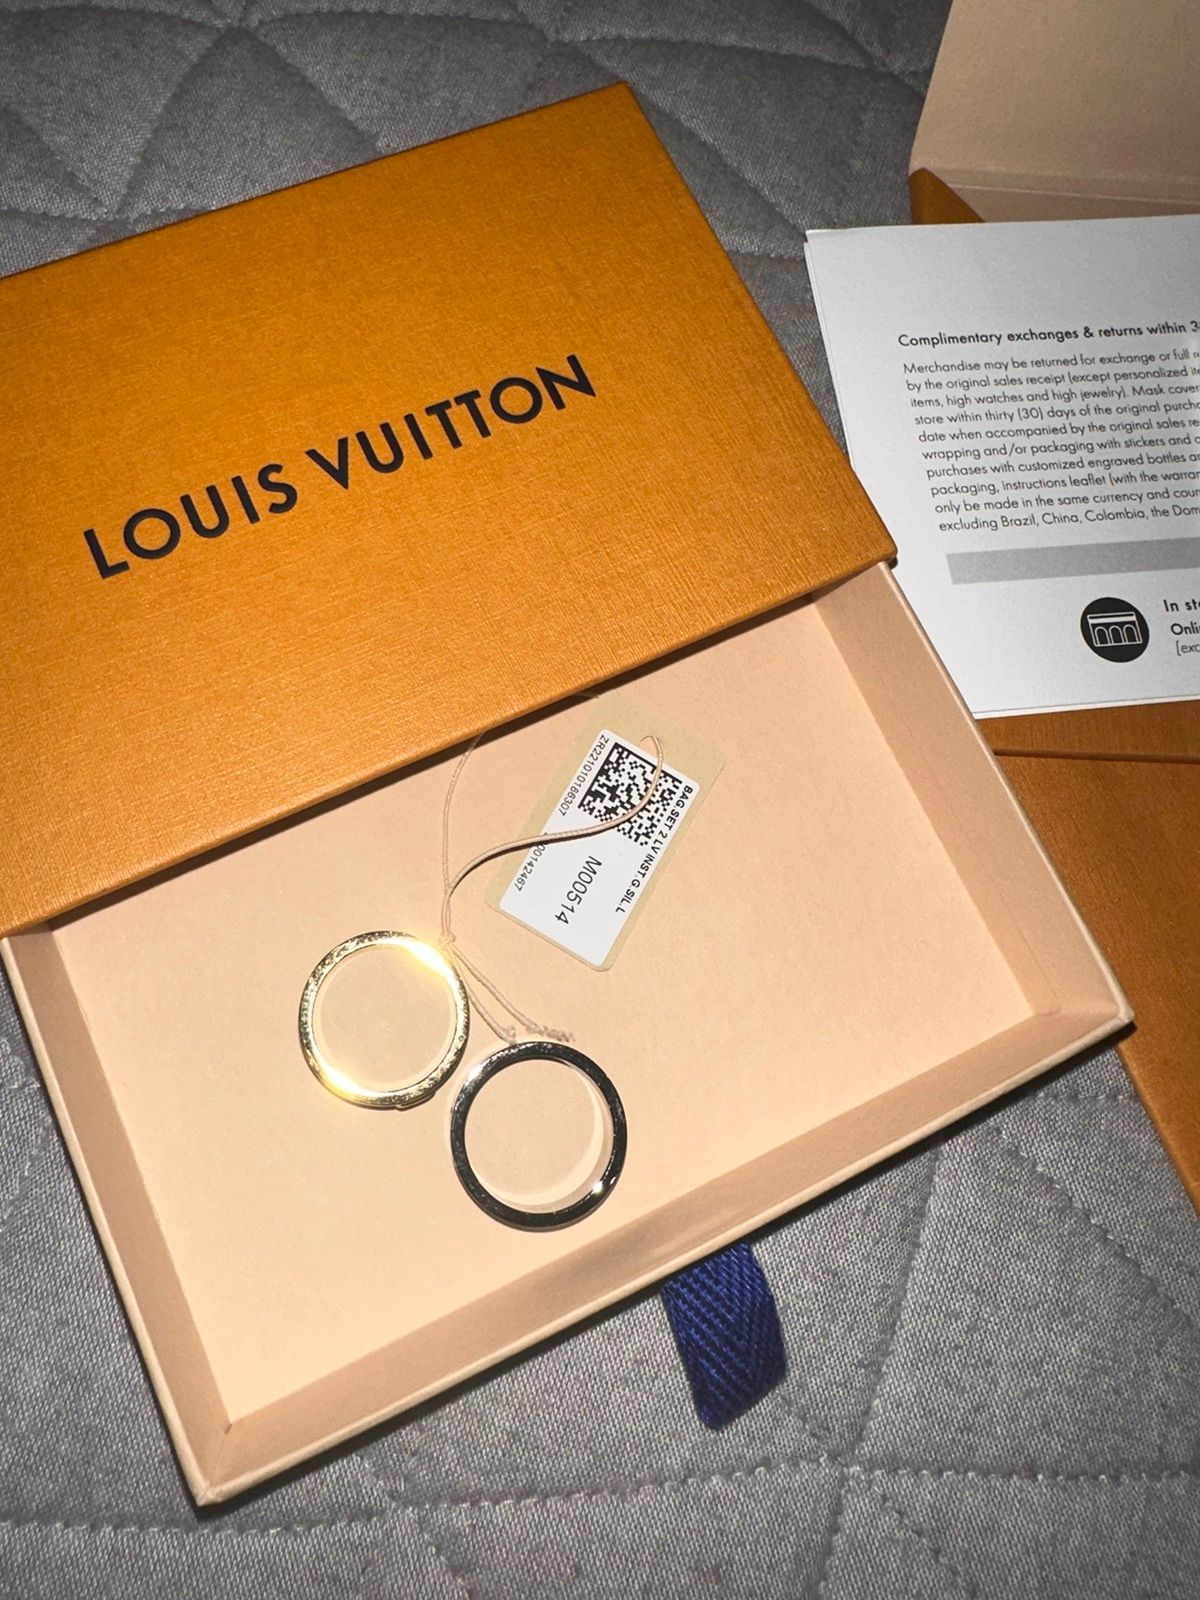 Louis Vuitton Instinct Two Ring Set